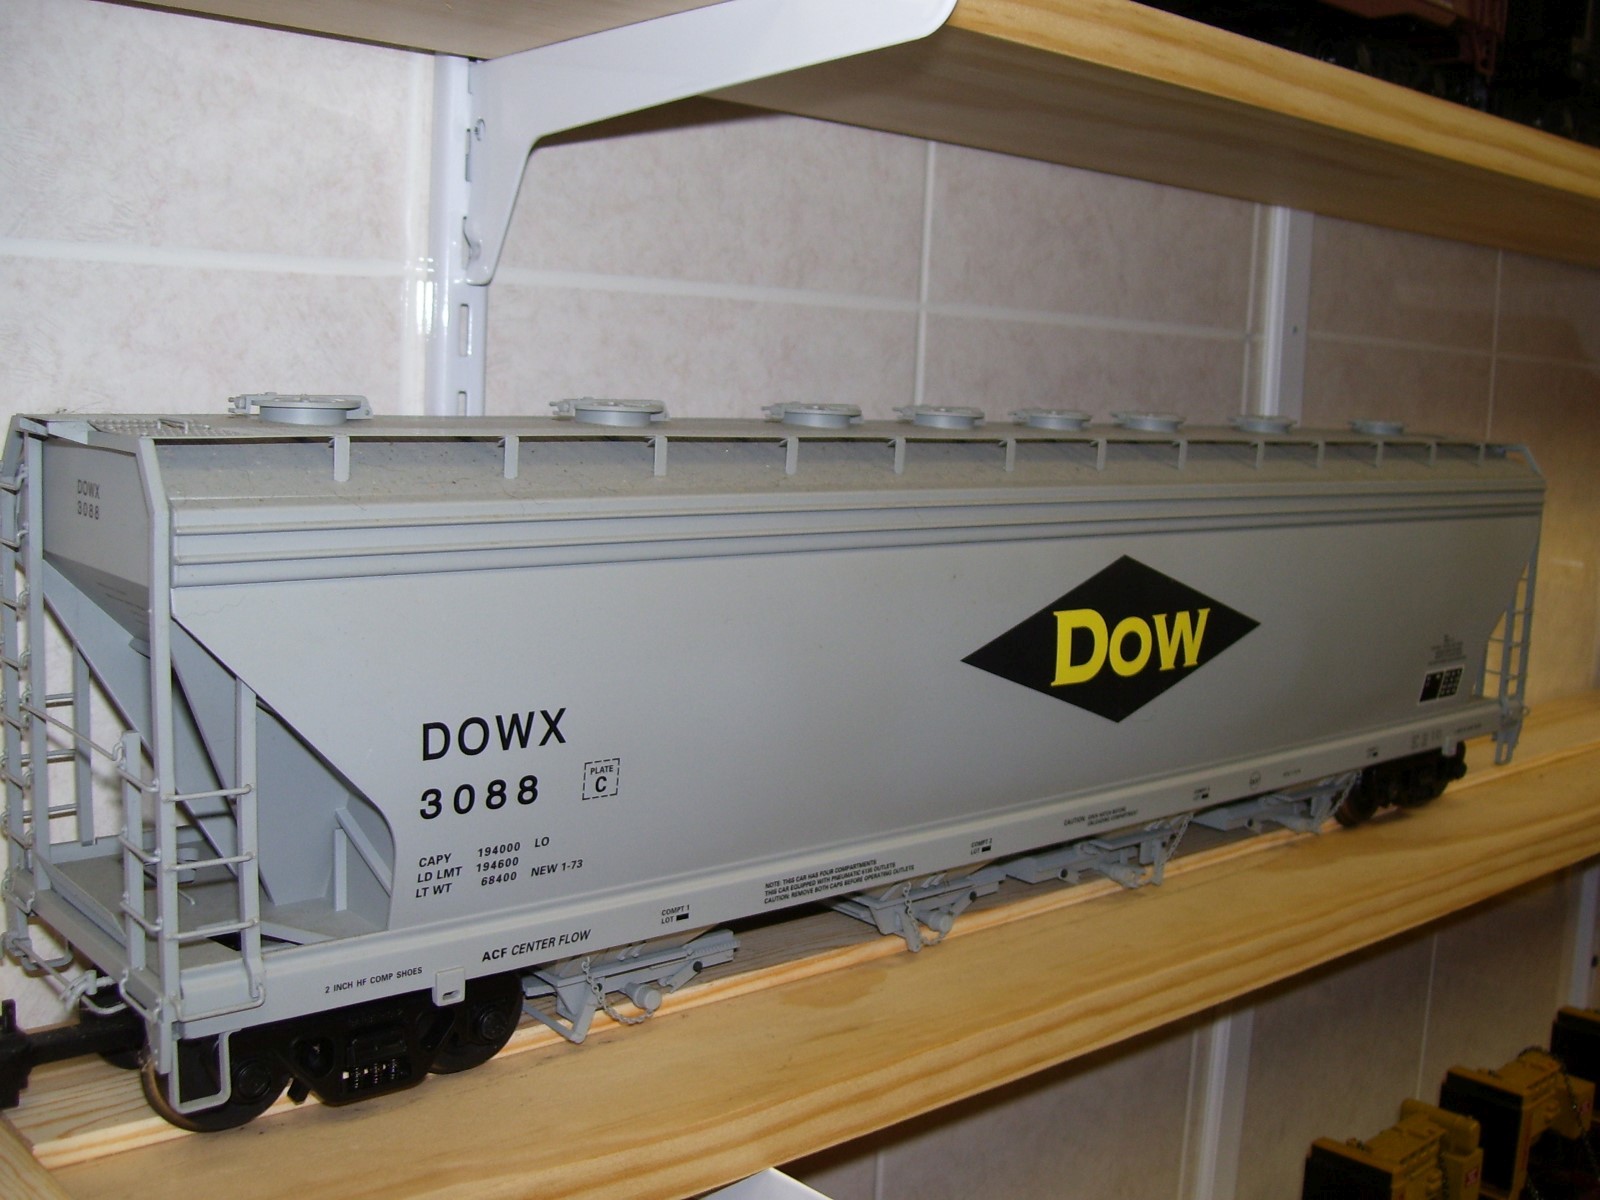 R14119 Dow Dowx 3088